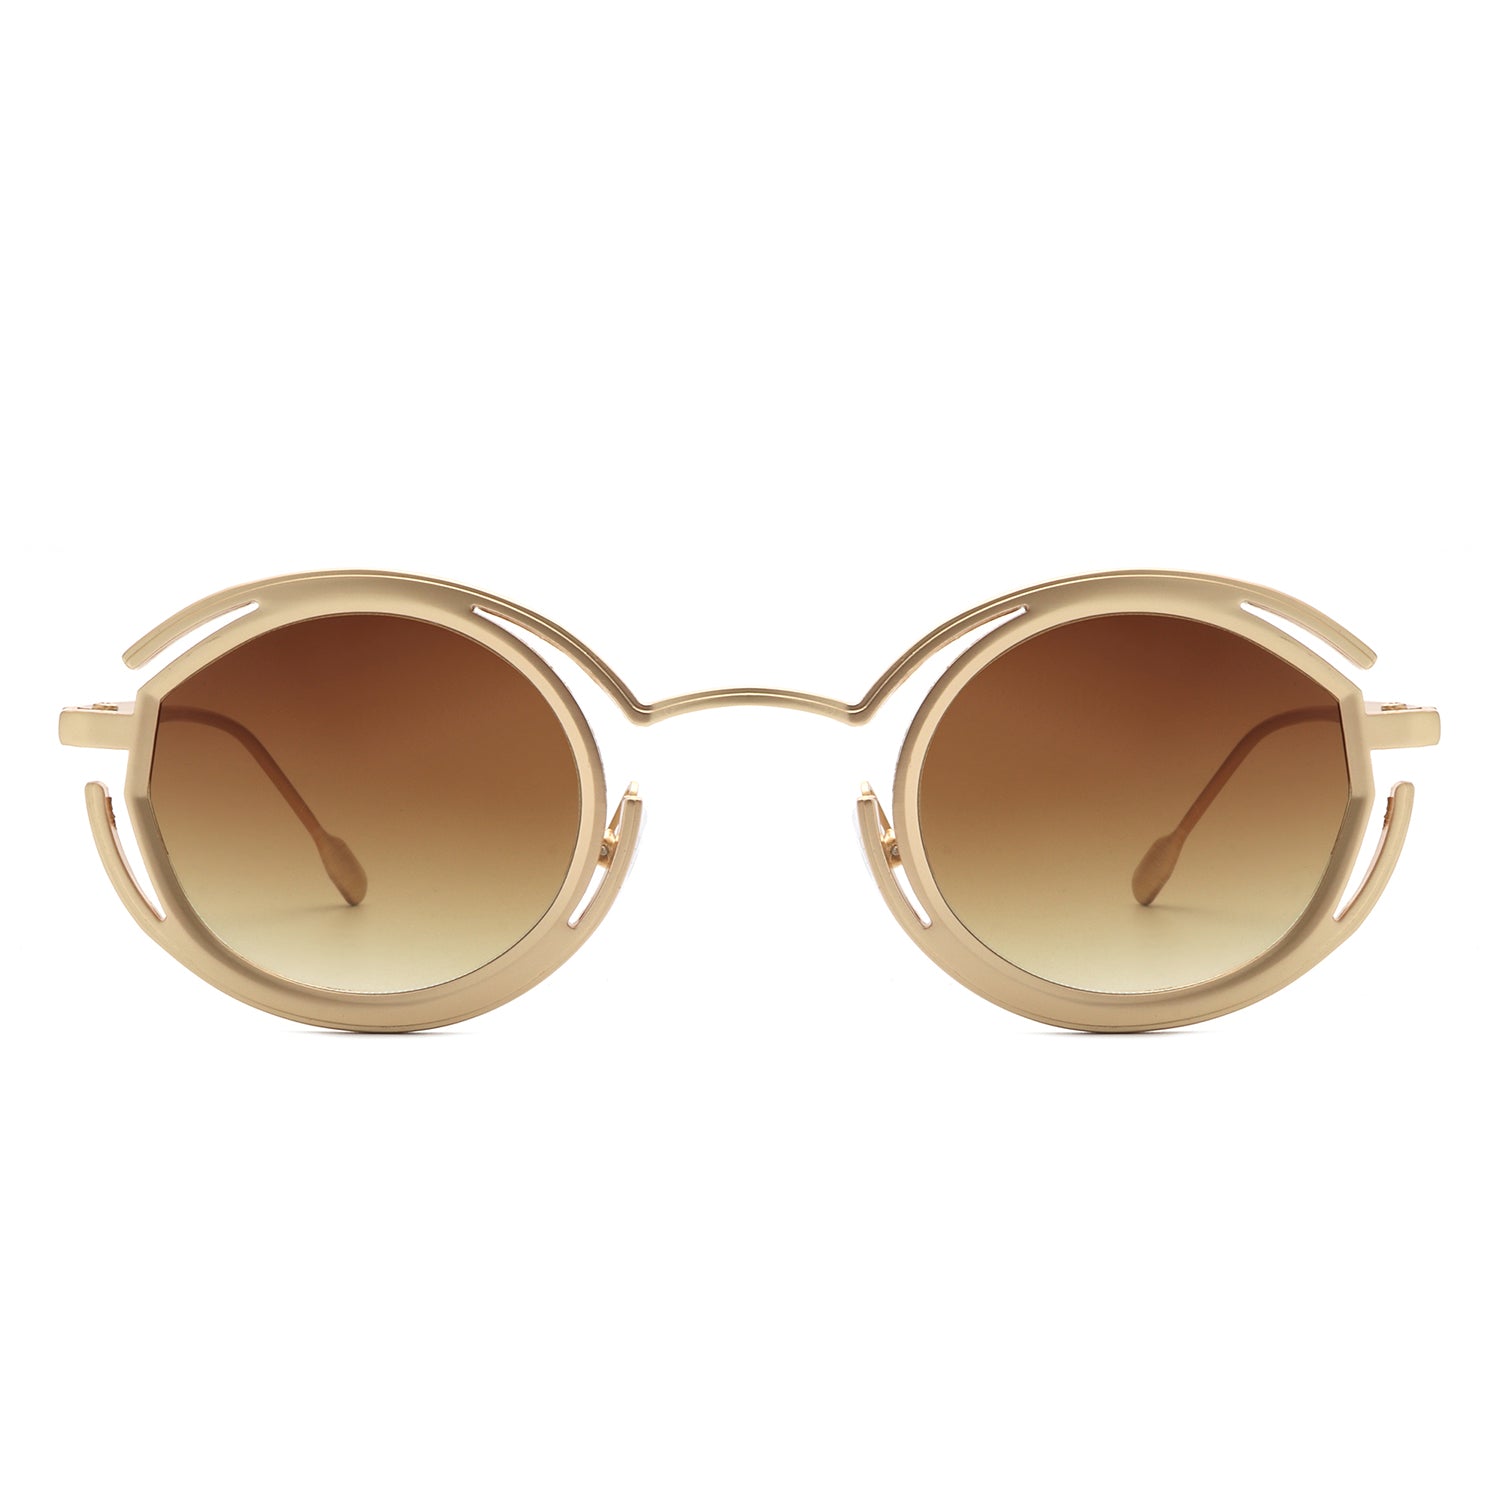 HJ2048 - Fashion Circle Geometric Round Futuristic Fashion Wholesale Sunglasses